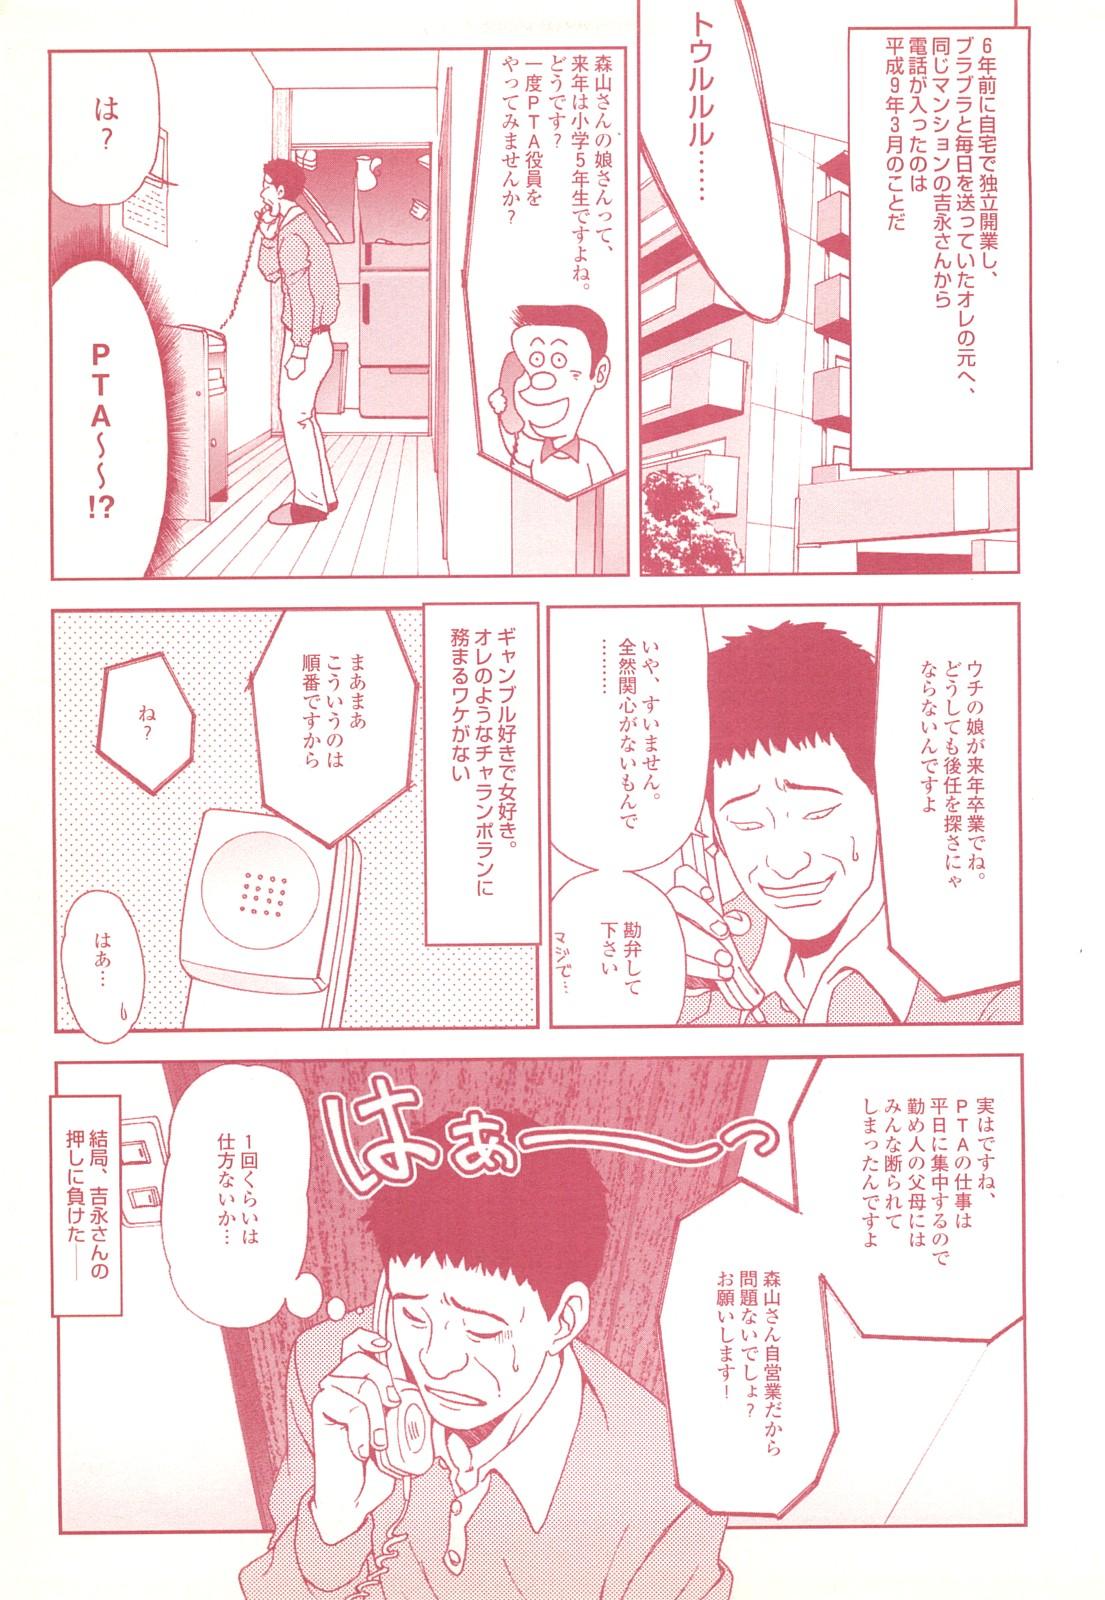 コミック裏モノJAPAN Vol.18 今井のりたつスペシャル号 108